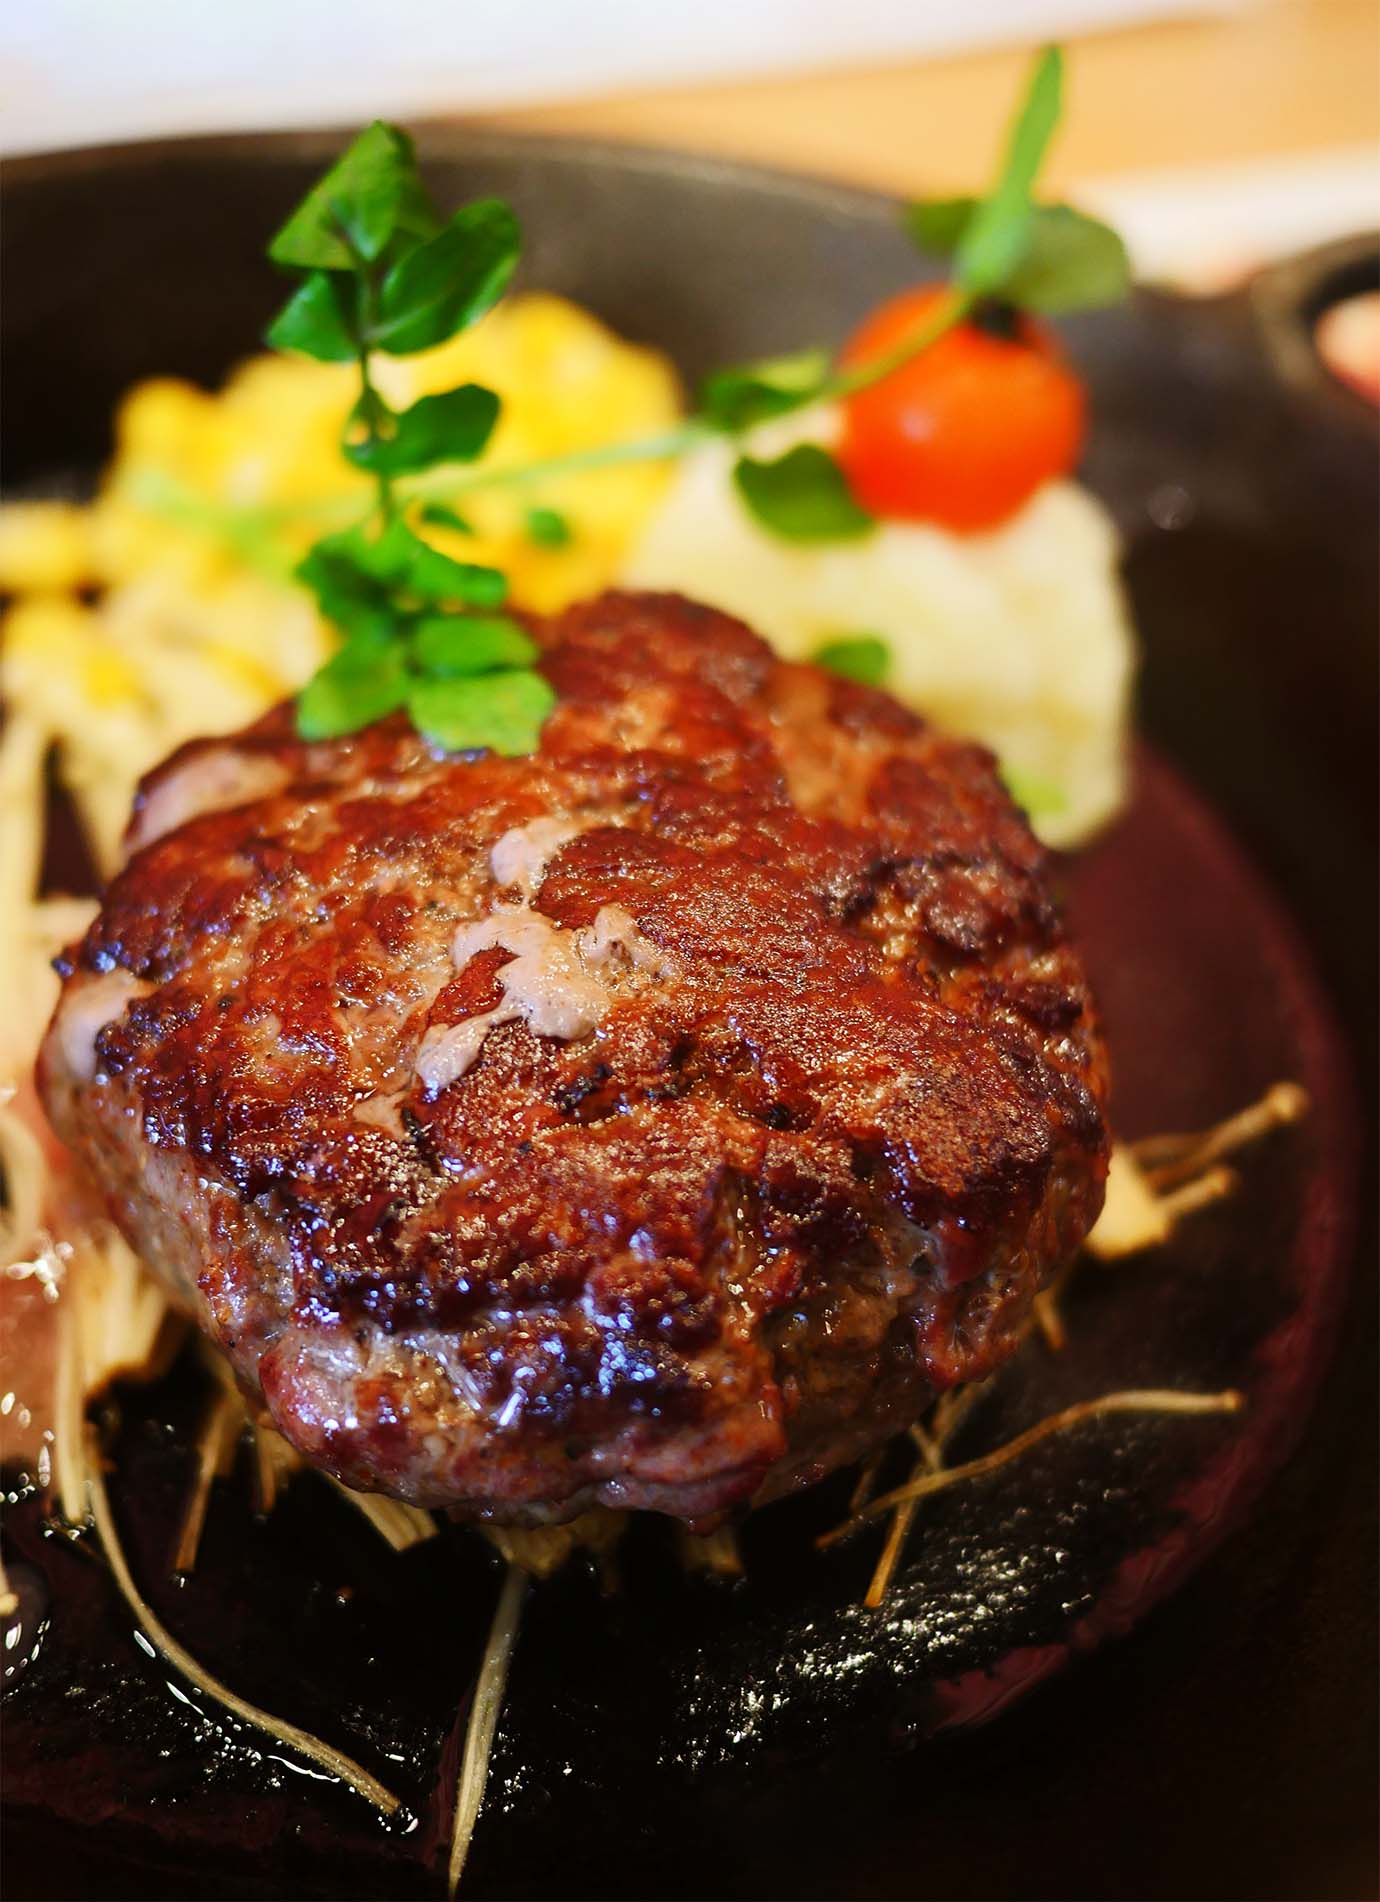 静岡さわやかに肉を卸していた問屋が東京にハンバーグ専門店オープンか / 平日ランチはライスとスープ食べ放題